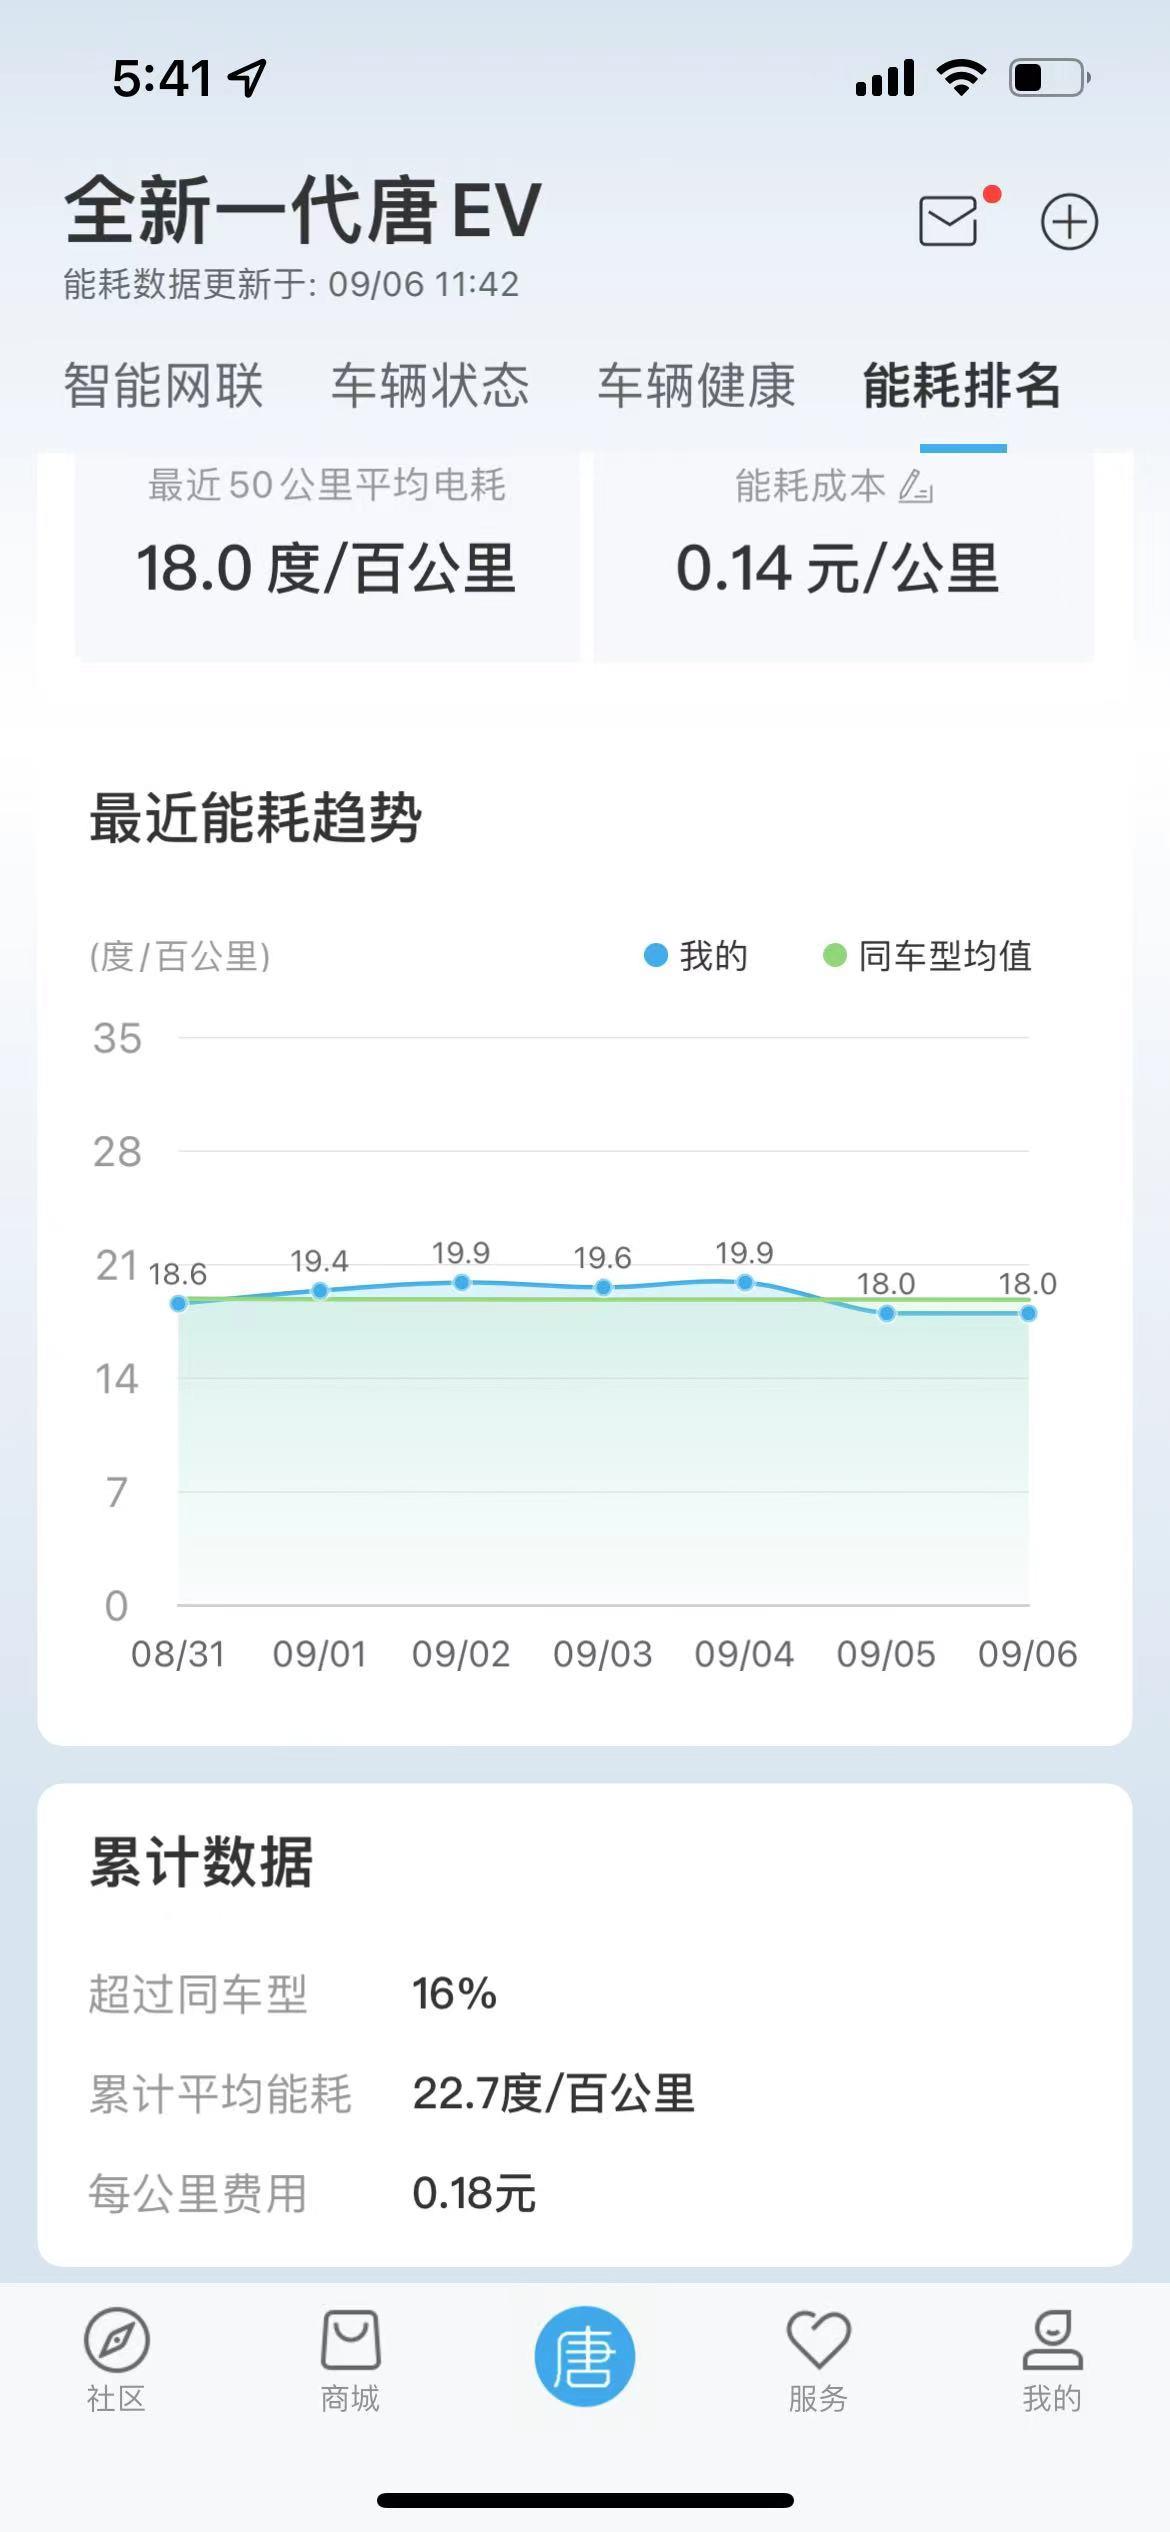 比亚迪唐EV 唐车主，电耗动不动就15以下怎么跑的，坐标北京环境20-30°，温柔开最低18，怎么做